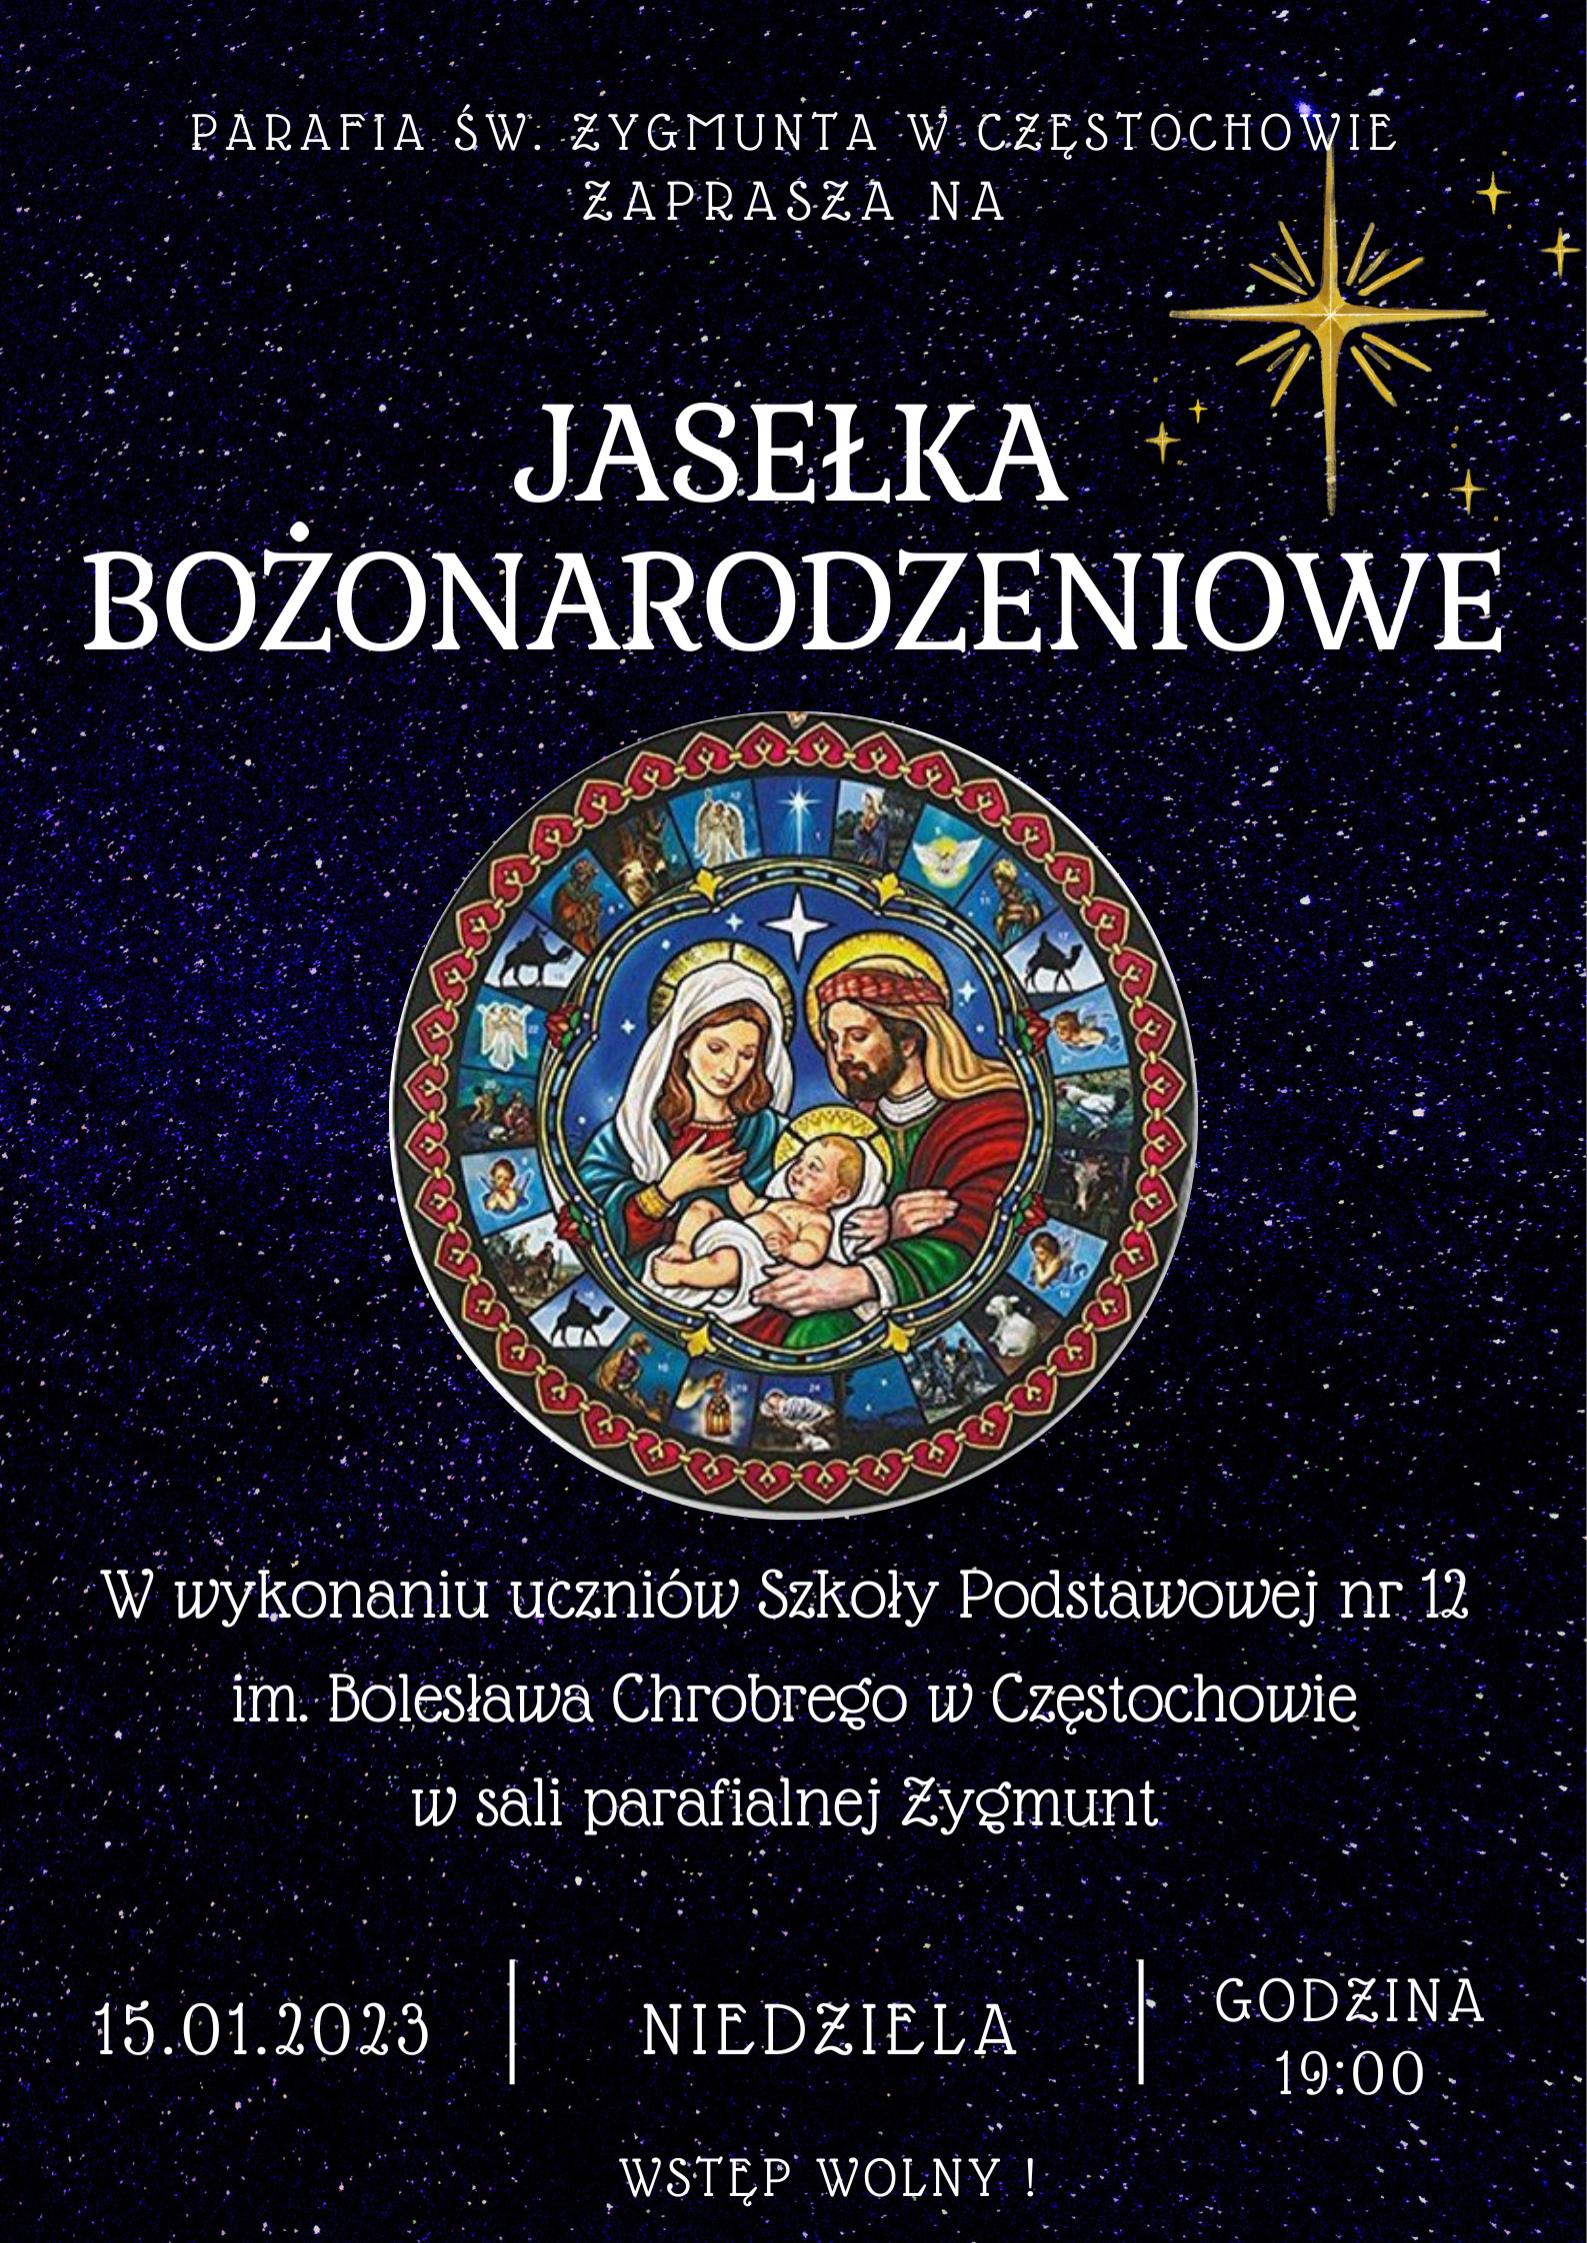 Jasełka Bożonarodzeniowe w wykonaniu uczniów Szkoły Podstawowej nr 12.
15 stycznia 2023 r. godzina 19:00